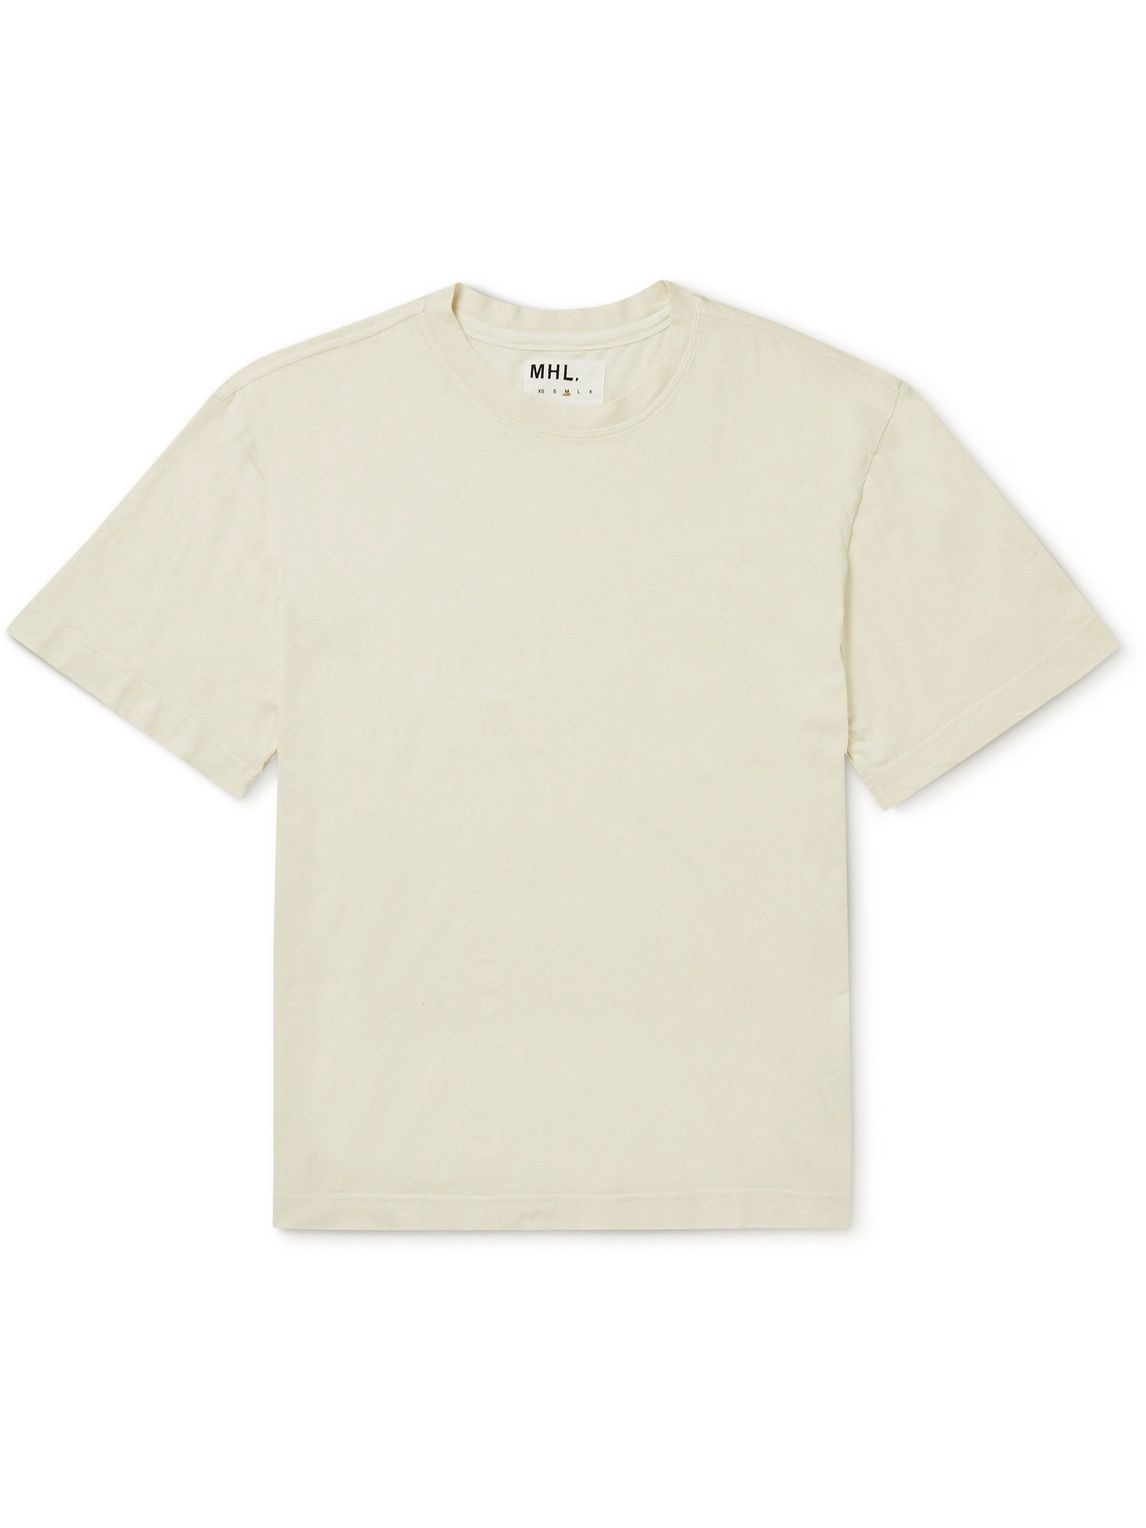 Photo: Margaret Howell - MHL Organic Cotton and Linen-Blend Jersey T-Shirt - Neutrals